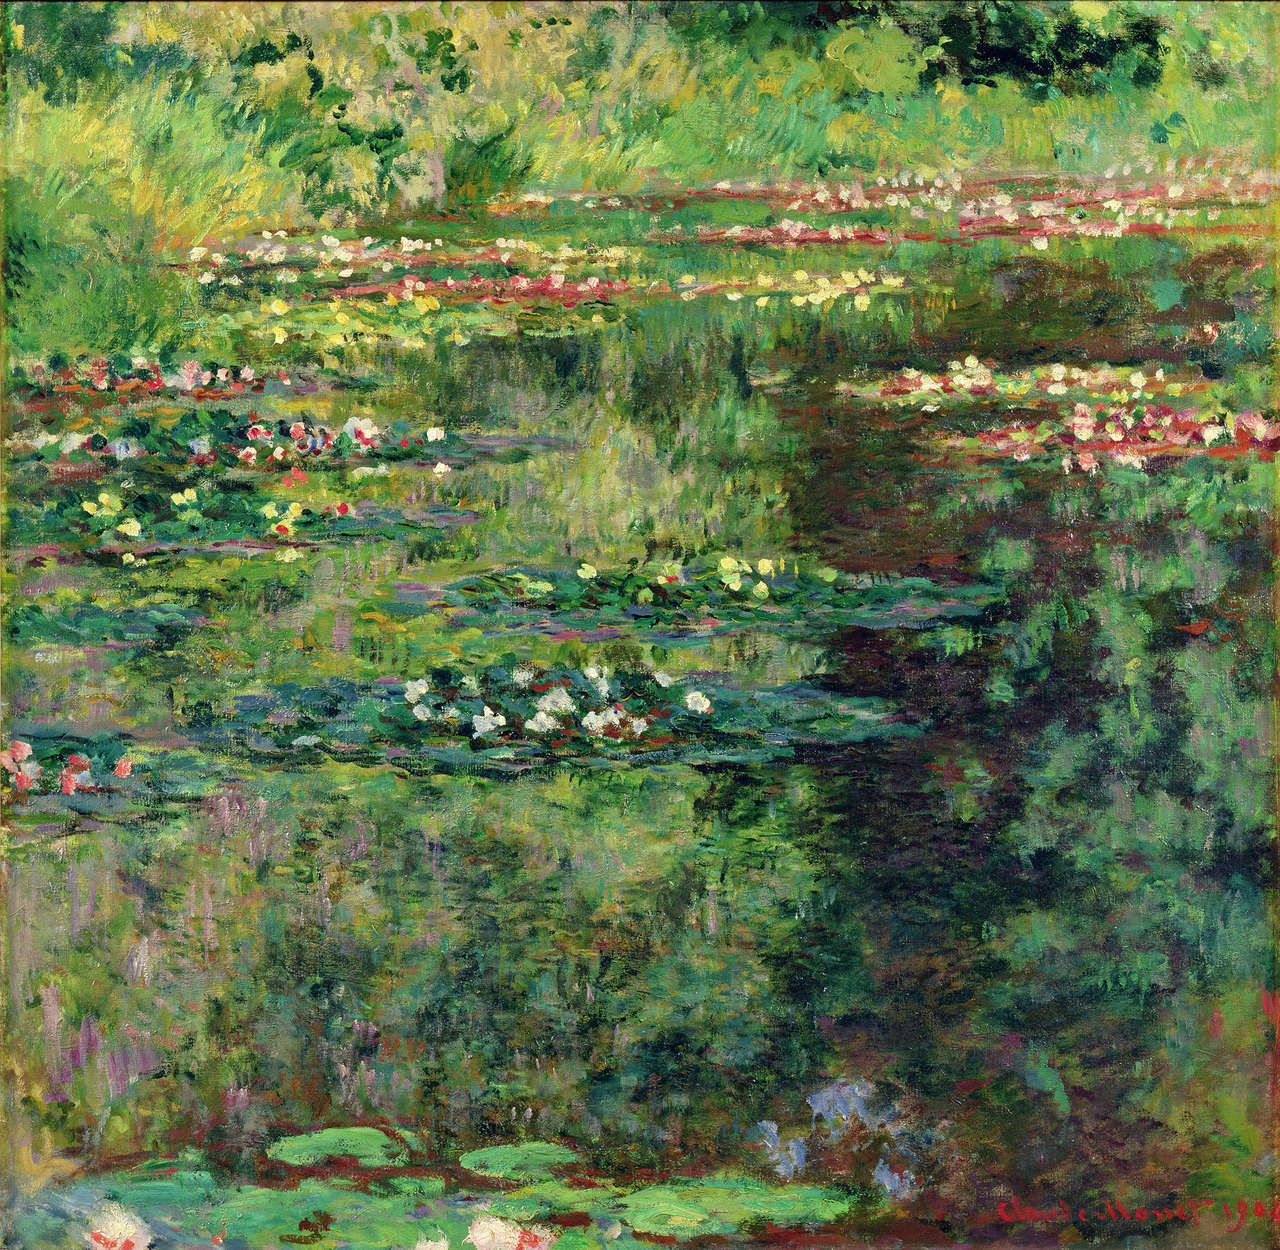             Waterlelie vijver" muurschildering van Claude Monet
        